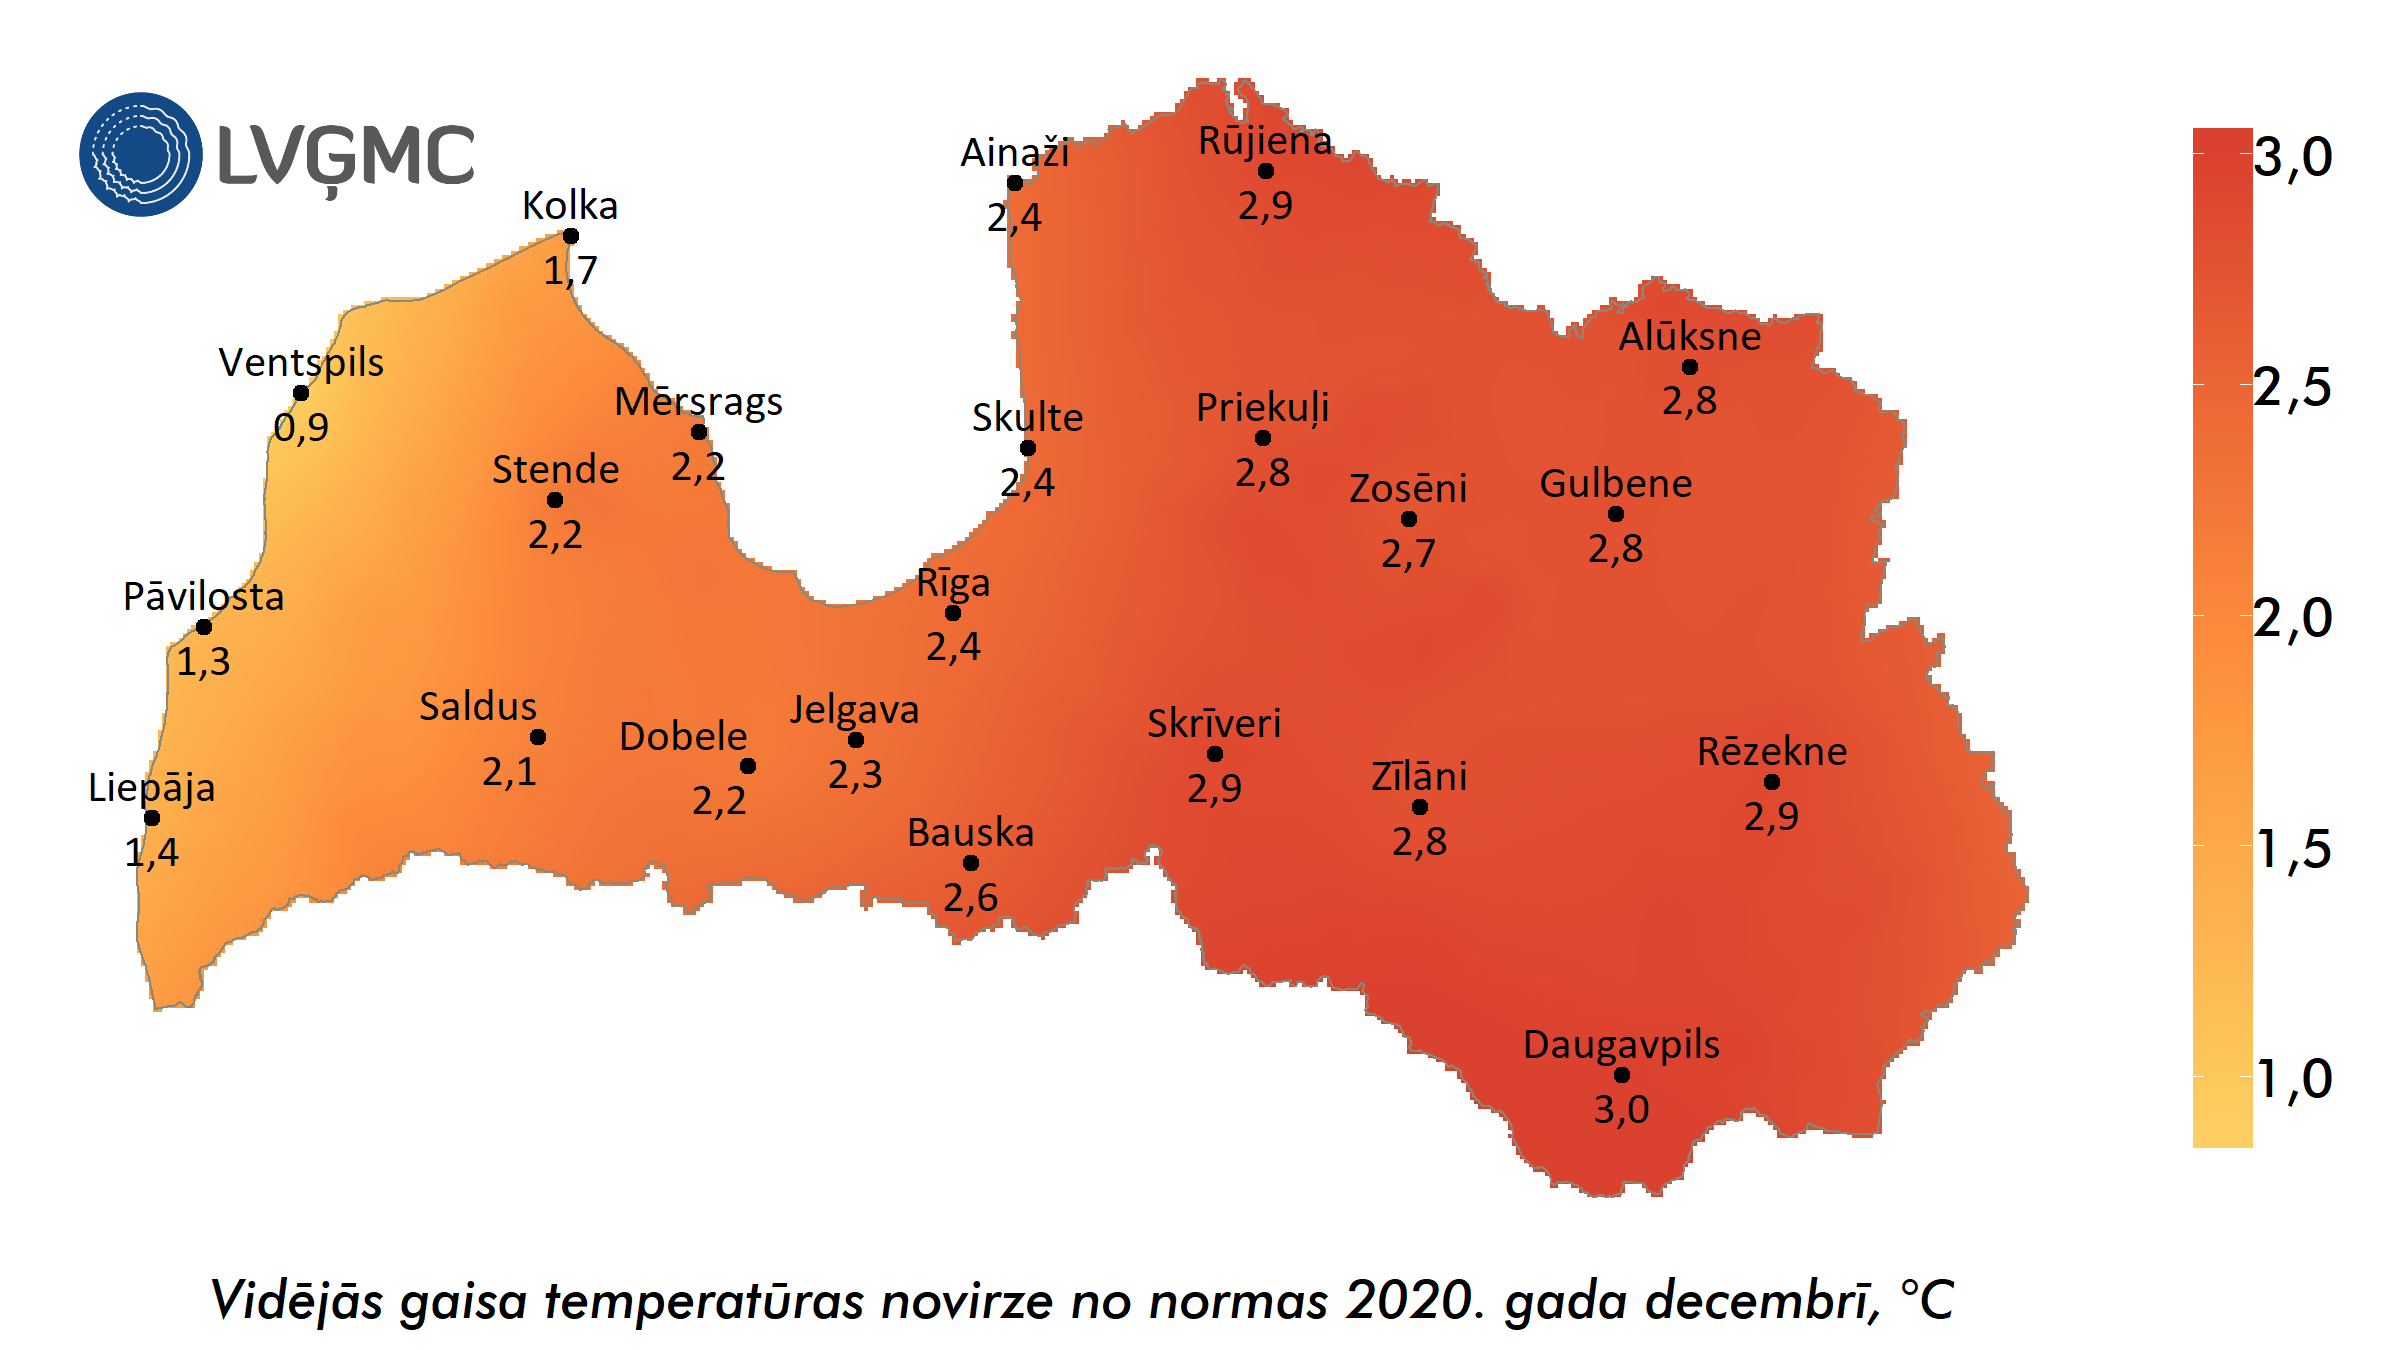 Vidējās gaisa temperatūras novirze no normas 2020. gada decembrī, °C